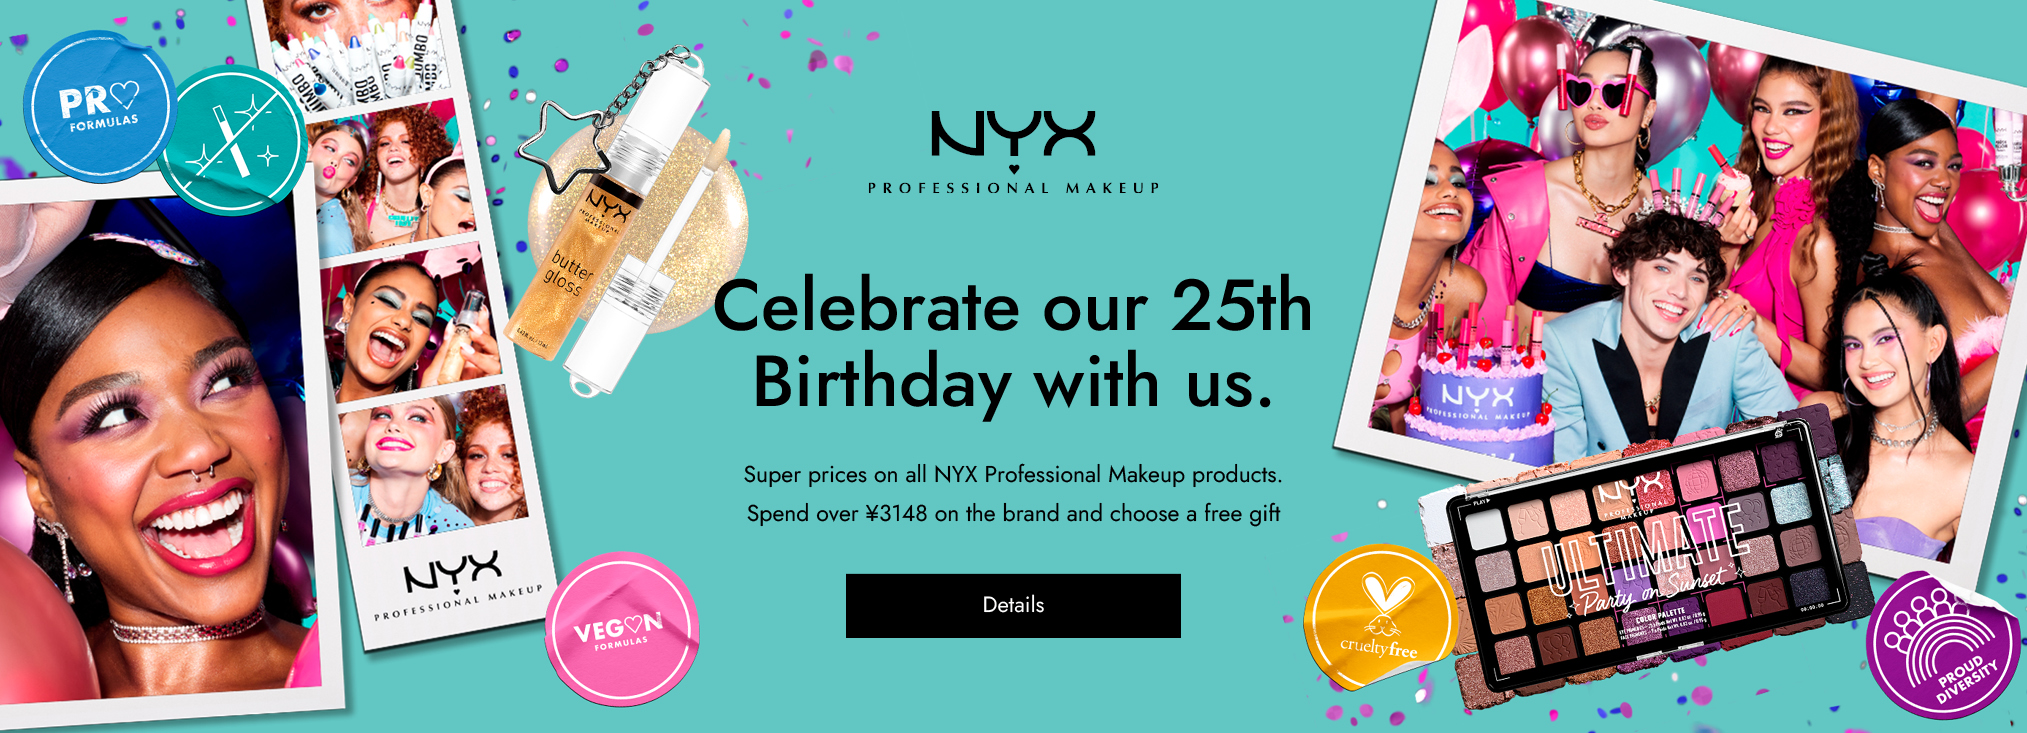 NYX Professional Makeup_makeup